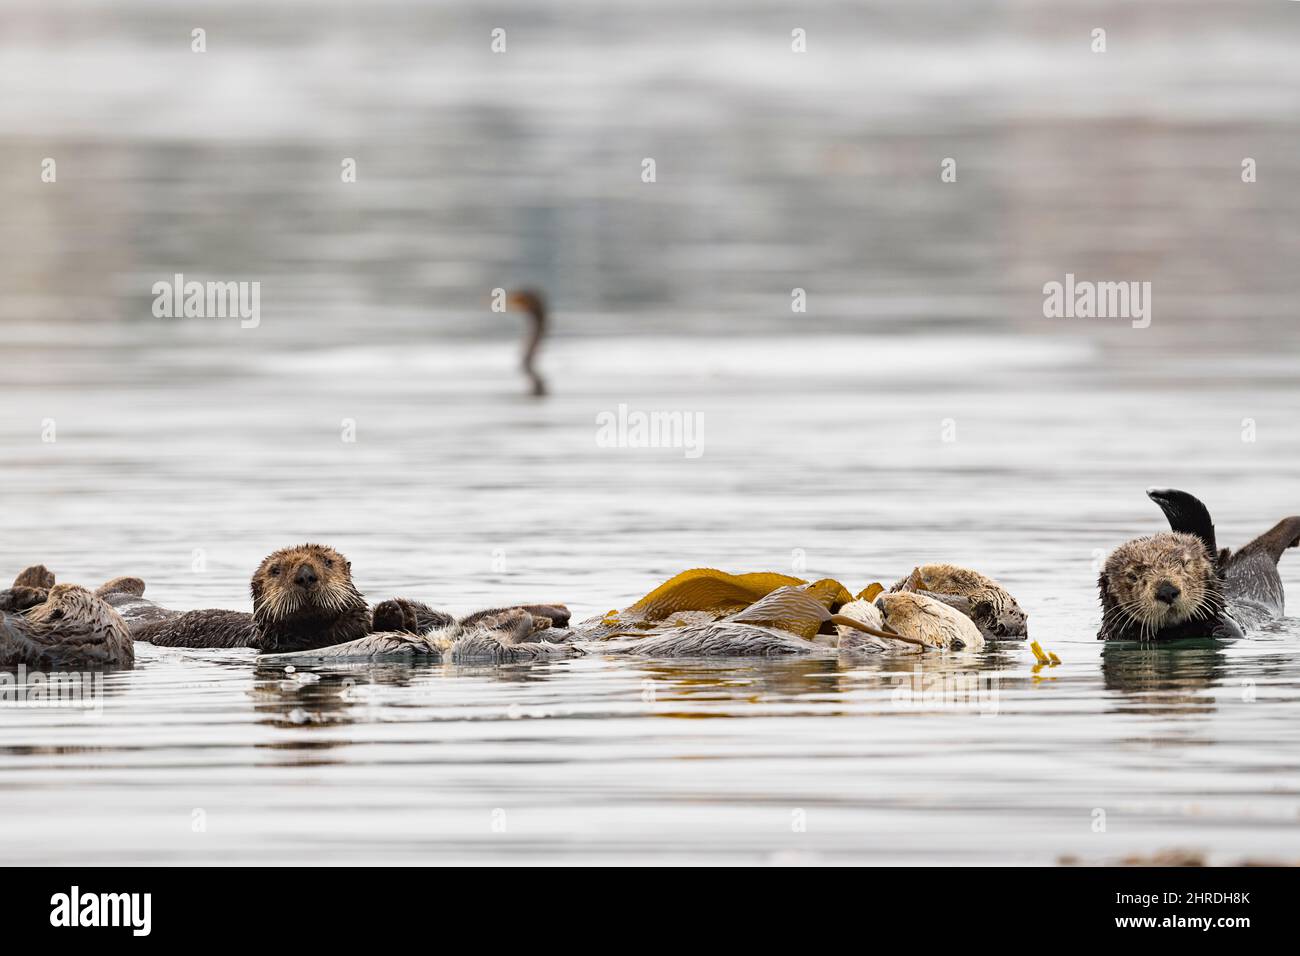 Ein Floß kalifornischer Seeotter, Enhyrdra lutris nereis. Ruhen Sie sich aus, während Sie in riesigen Seetang gehüllt sind, der sie davon abhält, wegzutreiben; Morro Bay, Kalifornien Stockfoto